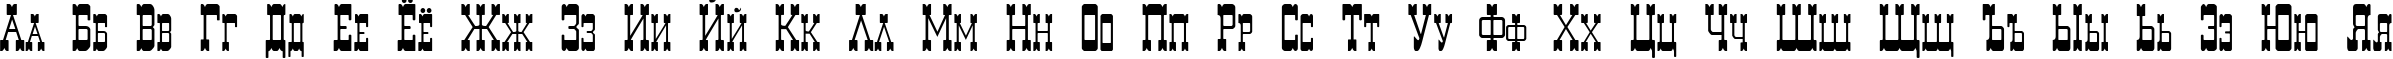 Пример написания русского алфавита шрифтом Decree Art One